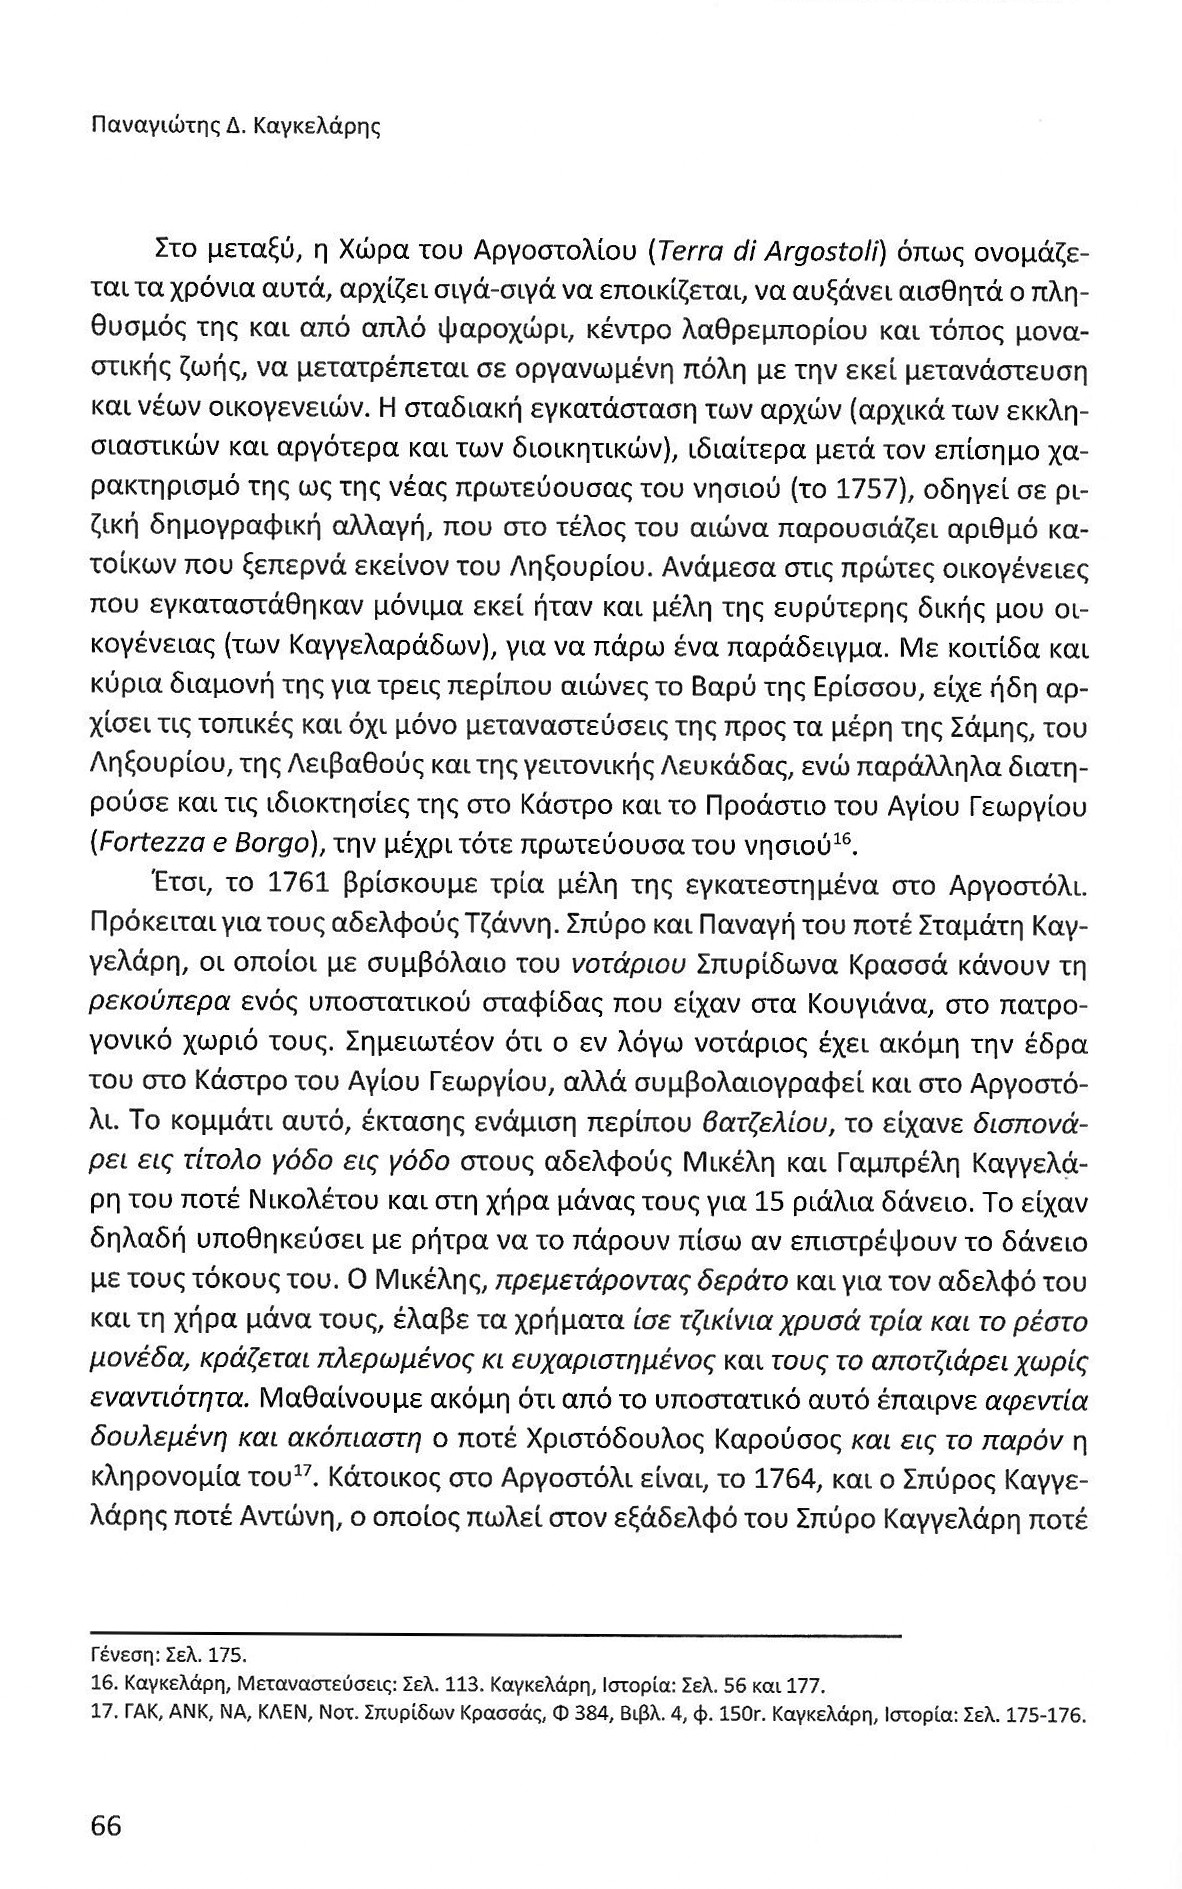 Πρώτα 50 χρόνια Αργοστολίου ως πρωτεύουσας Κεφαλονιάς, Ιονικά Ανάλεκτα, τ. 7, σελ. 66